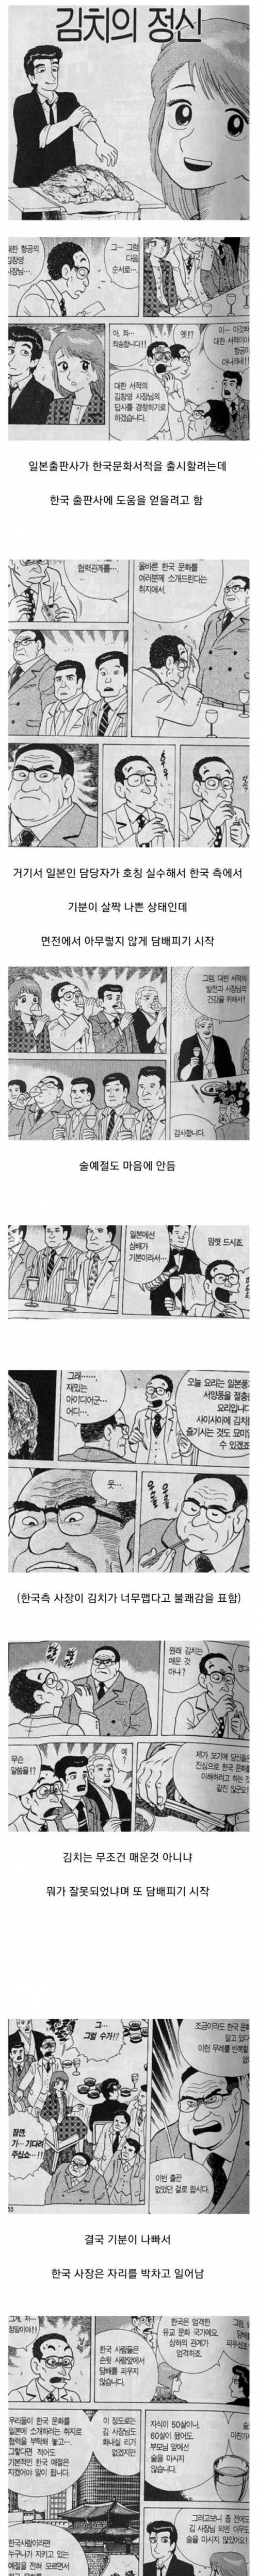 [스압] 일본만화 속 한국의 食문화.jpg